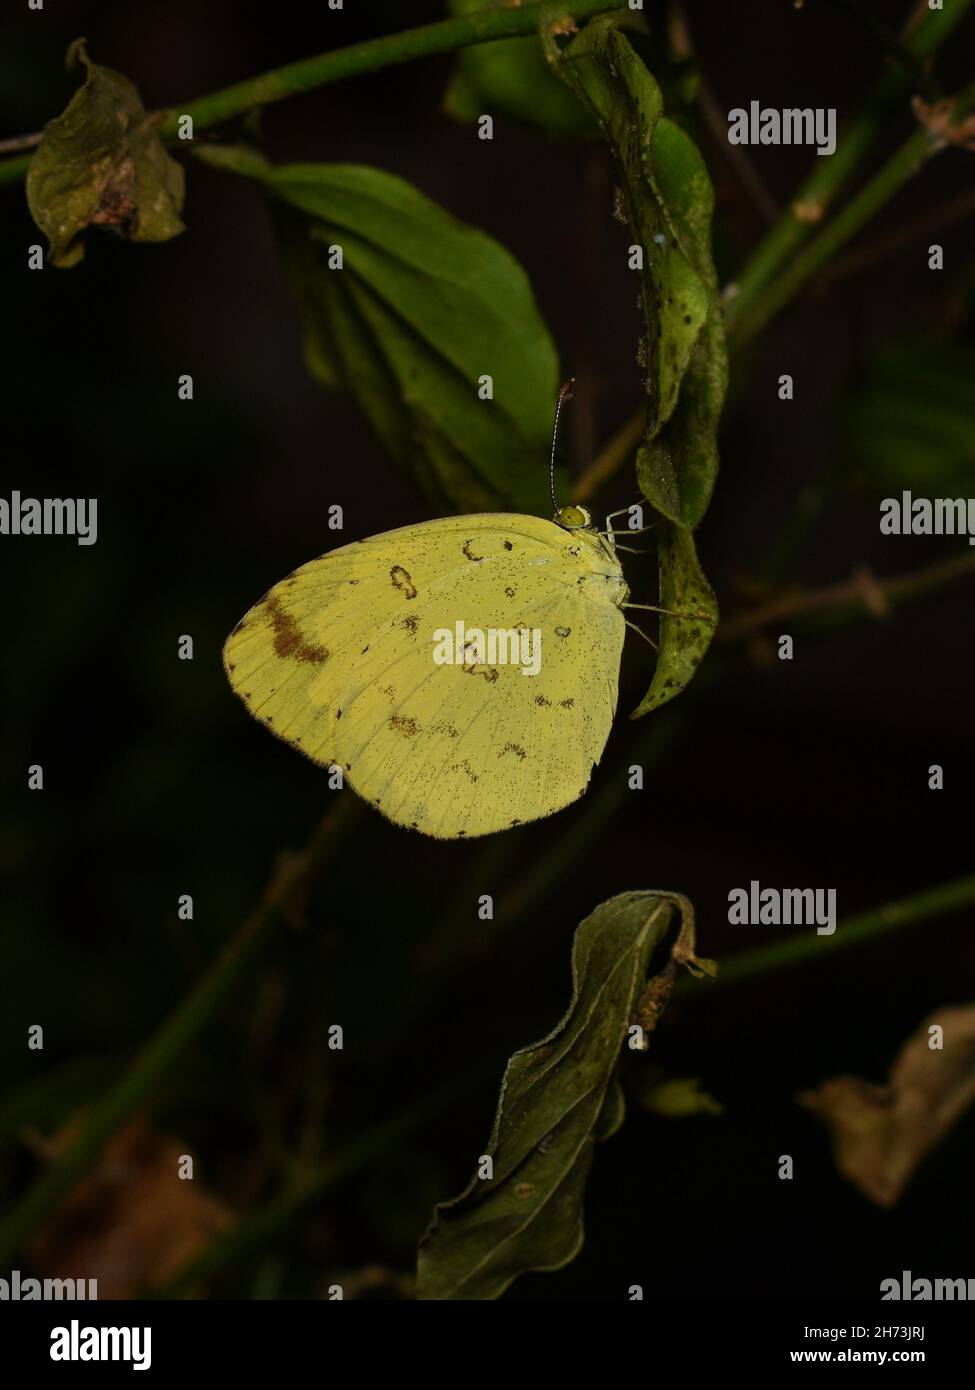 Hierba Común Mariposa amarilla descansando sobre una hoja Foto de stock